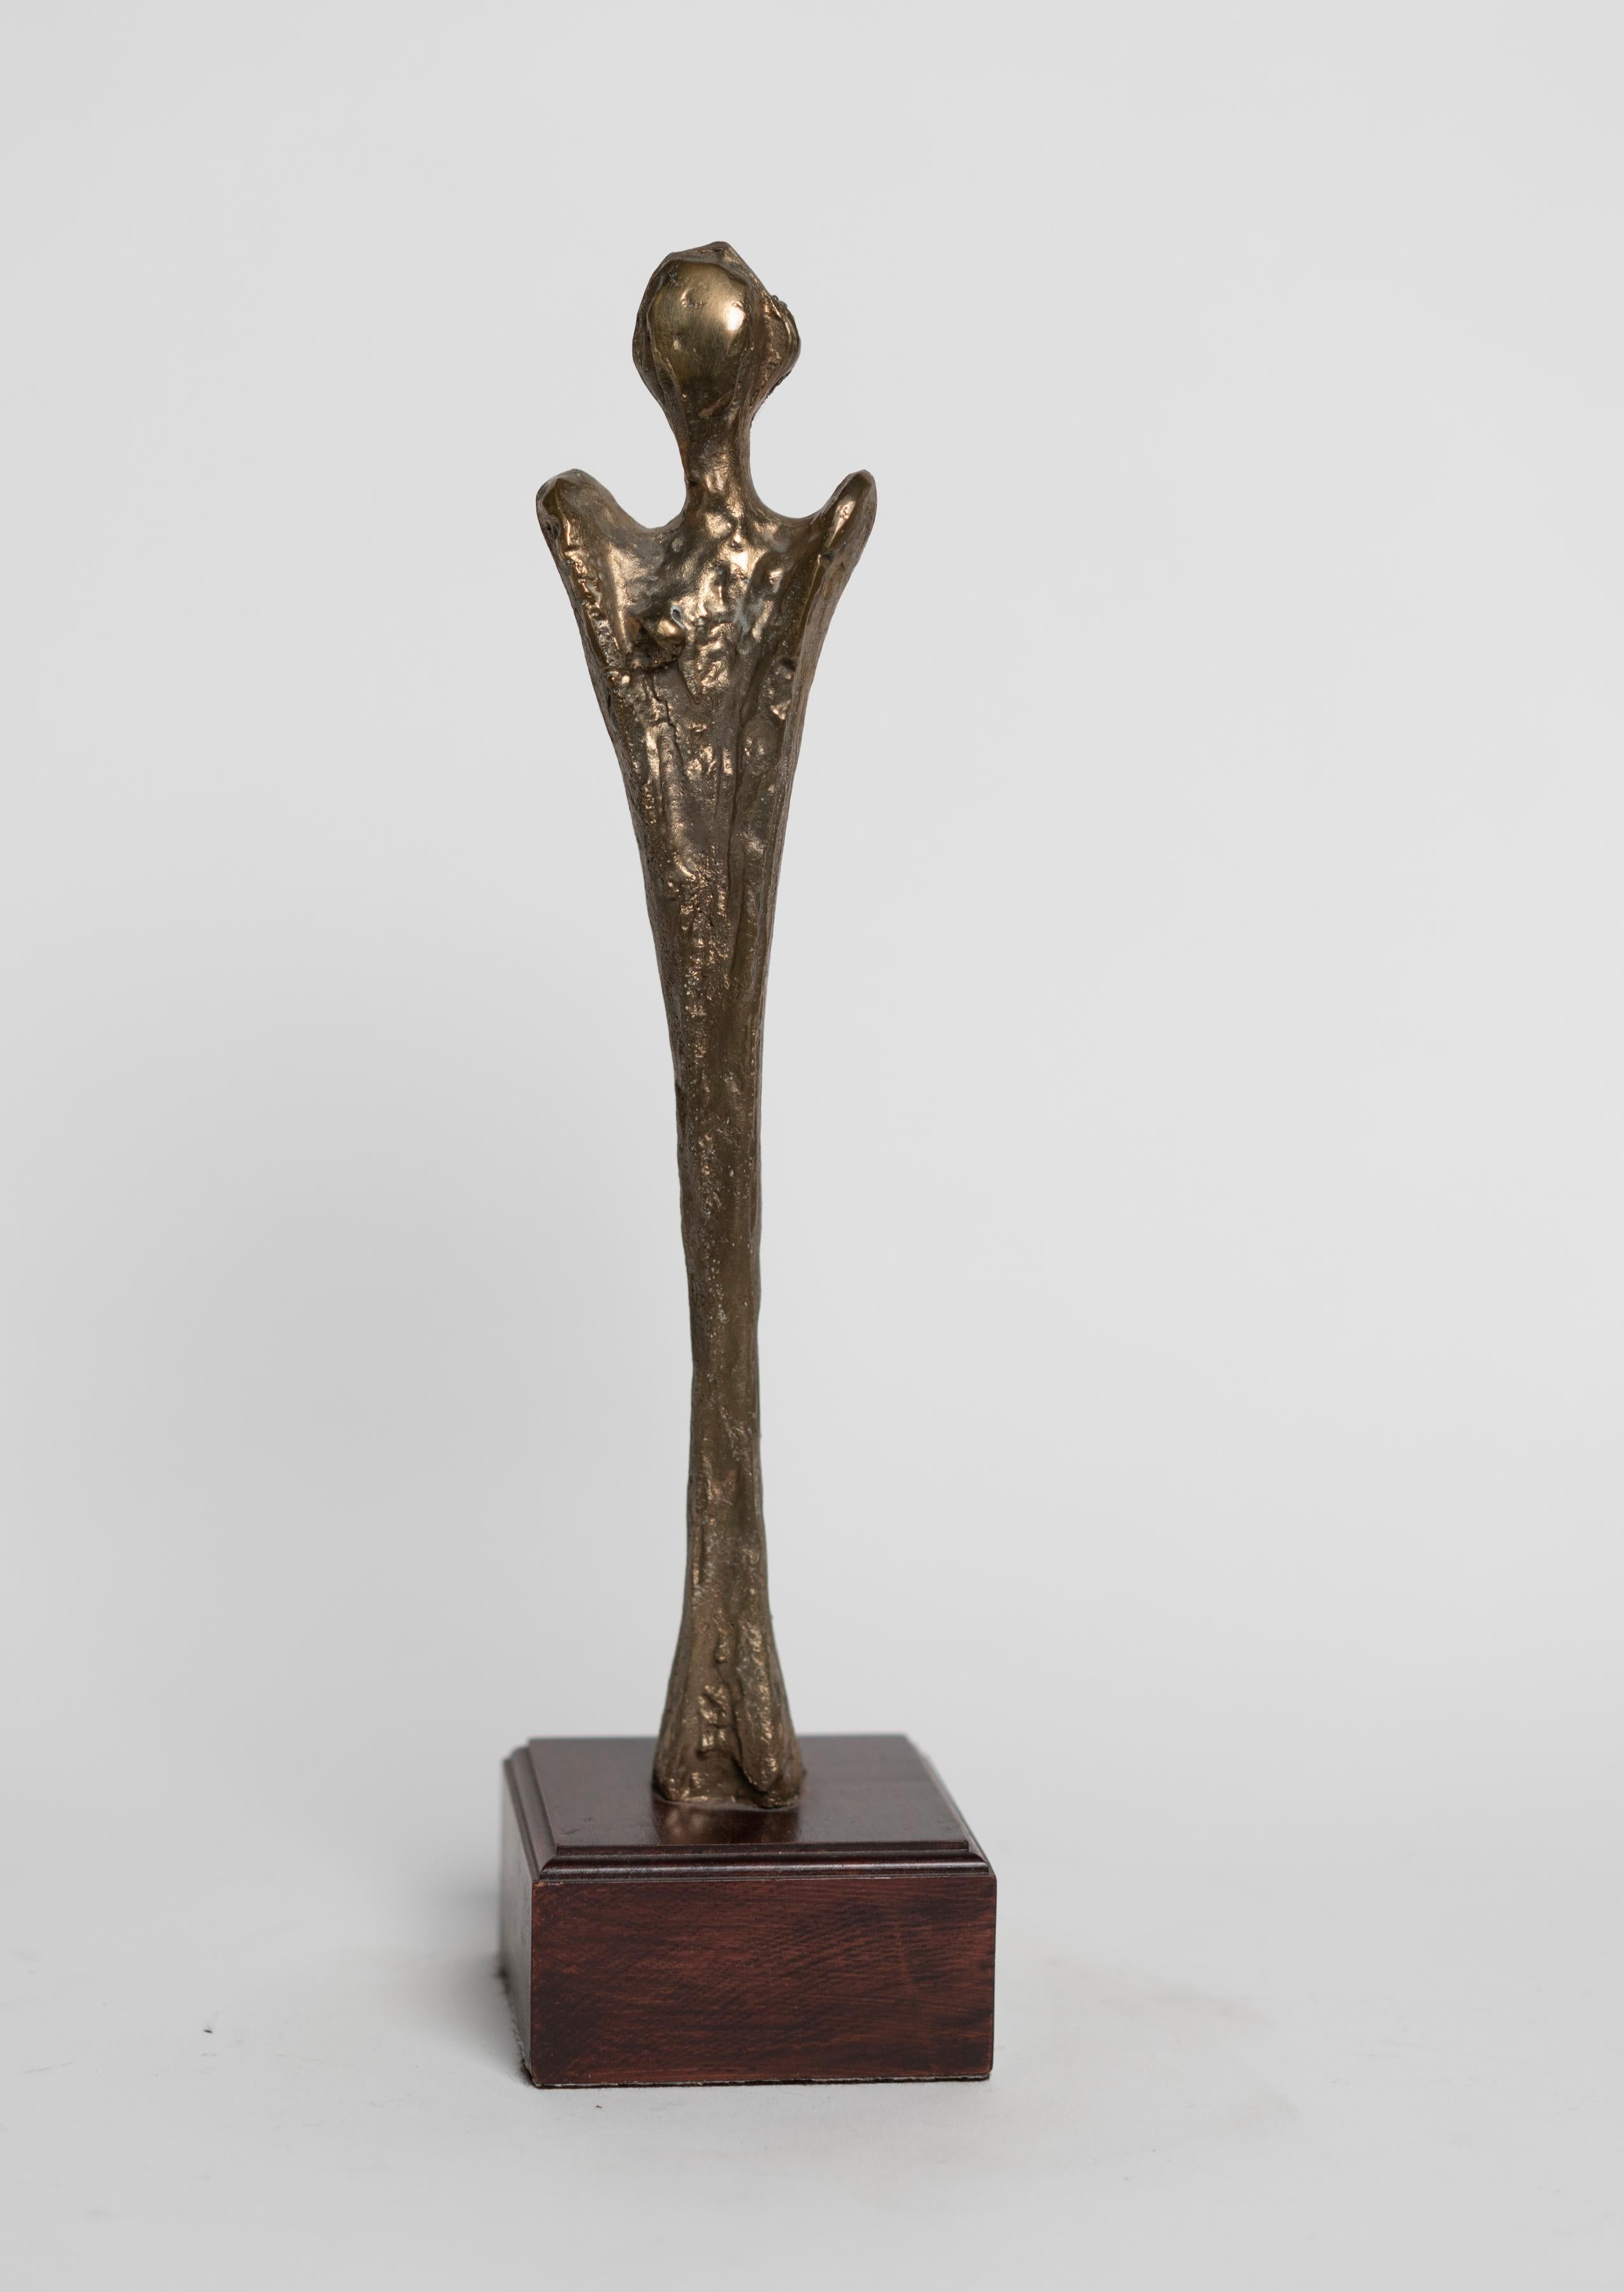 Patinierte Bronzefigur von Antonio Grediagia Kieff, signiert und graviert: Kieff e/a für épreuve d'artiste Künstlernachweis.